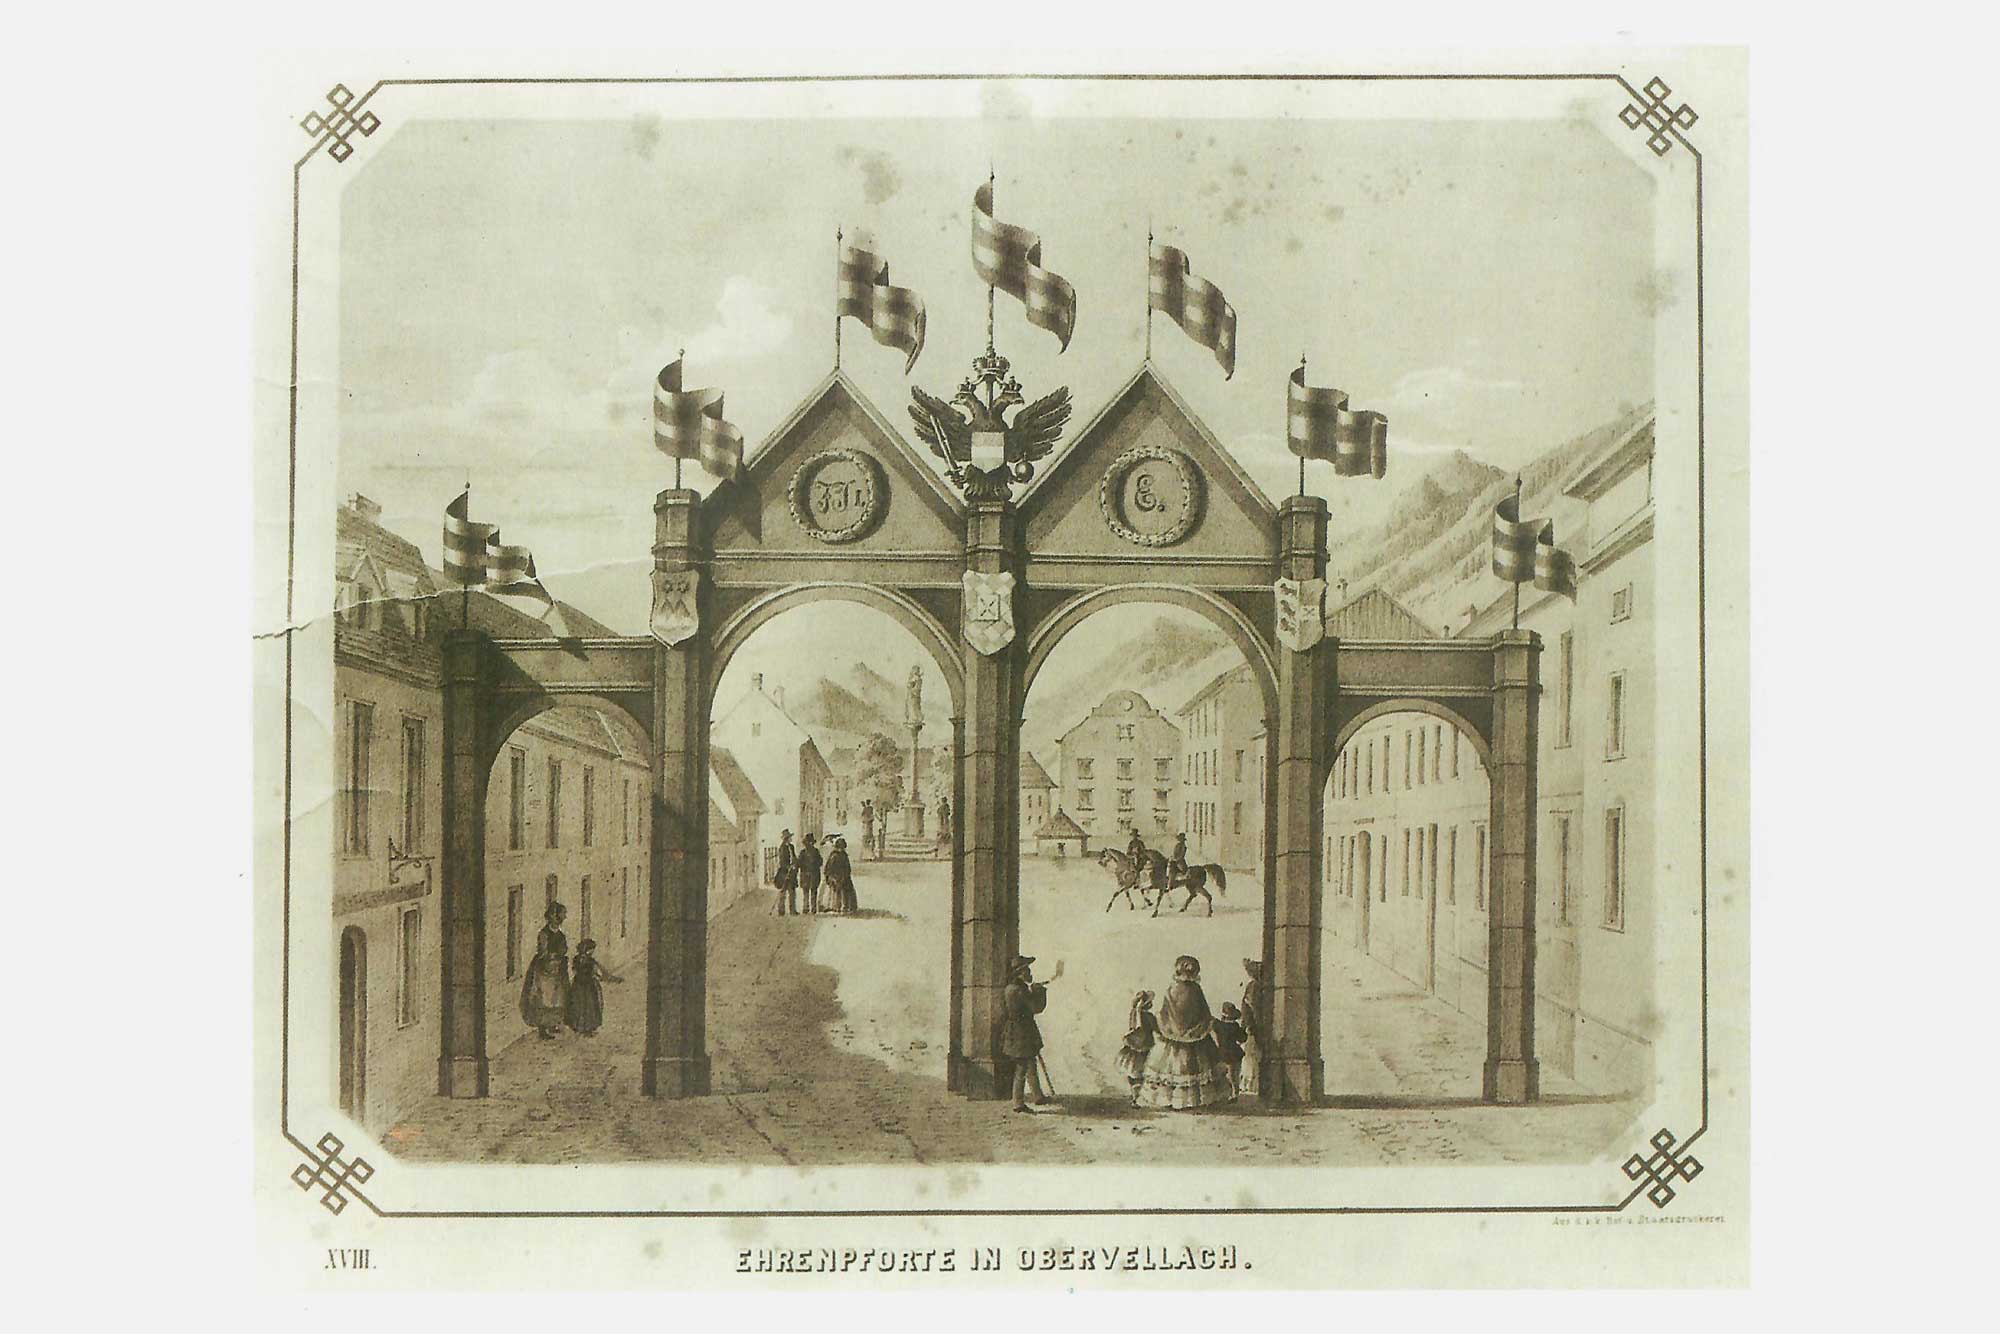 Ehrenpforte in Obervellach anlässl. des Besuches von Kaiser Franz-Josef und seiner Frau Elisabeth, 1856